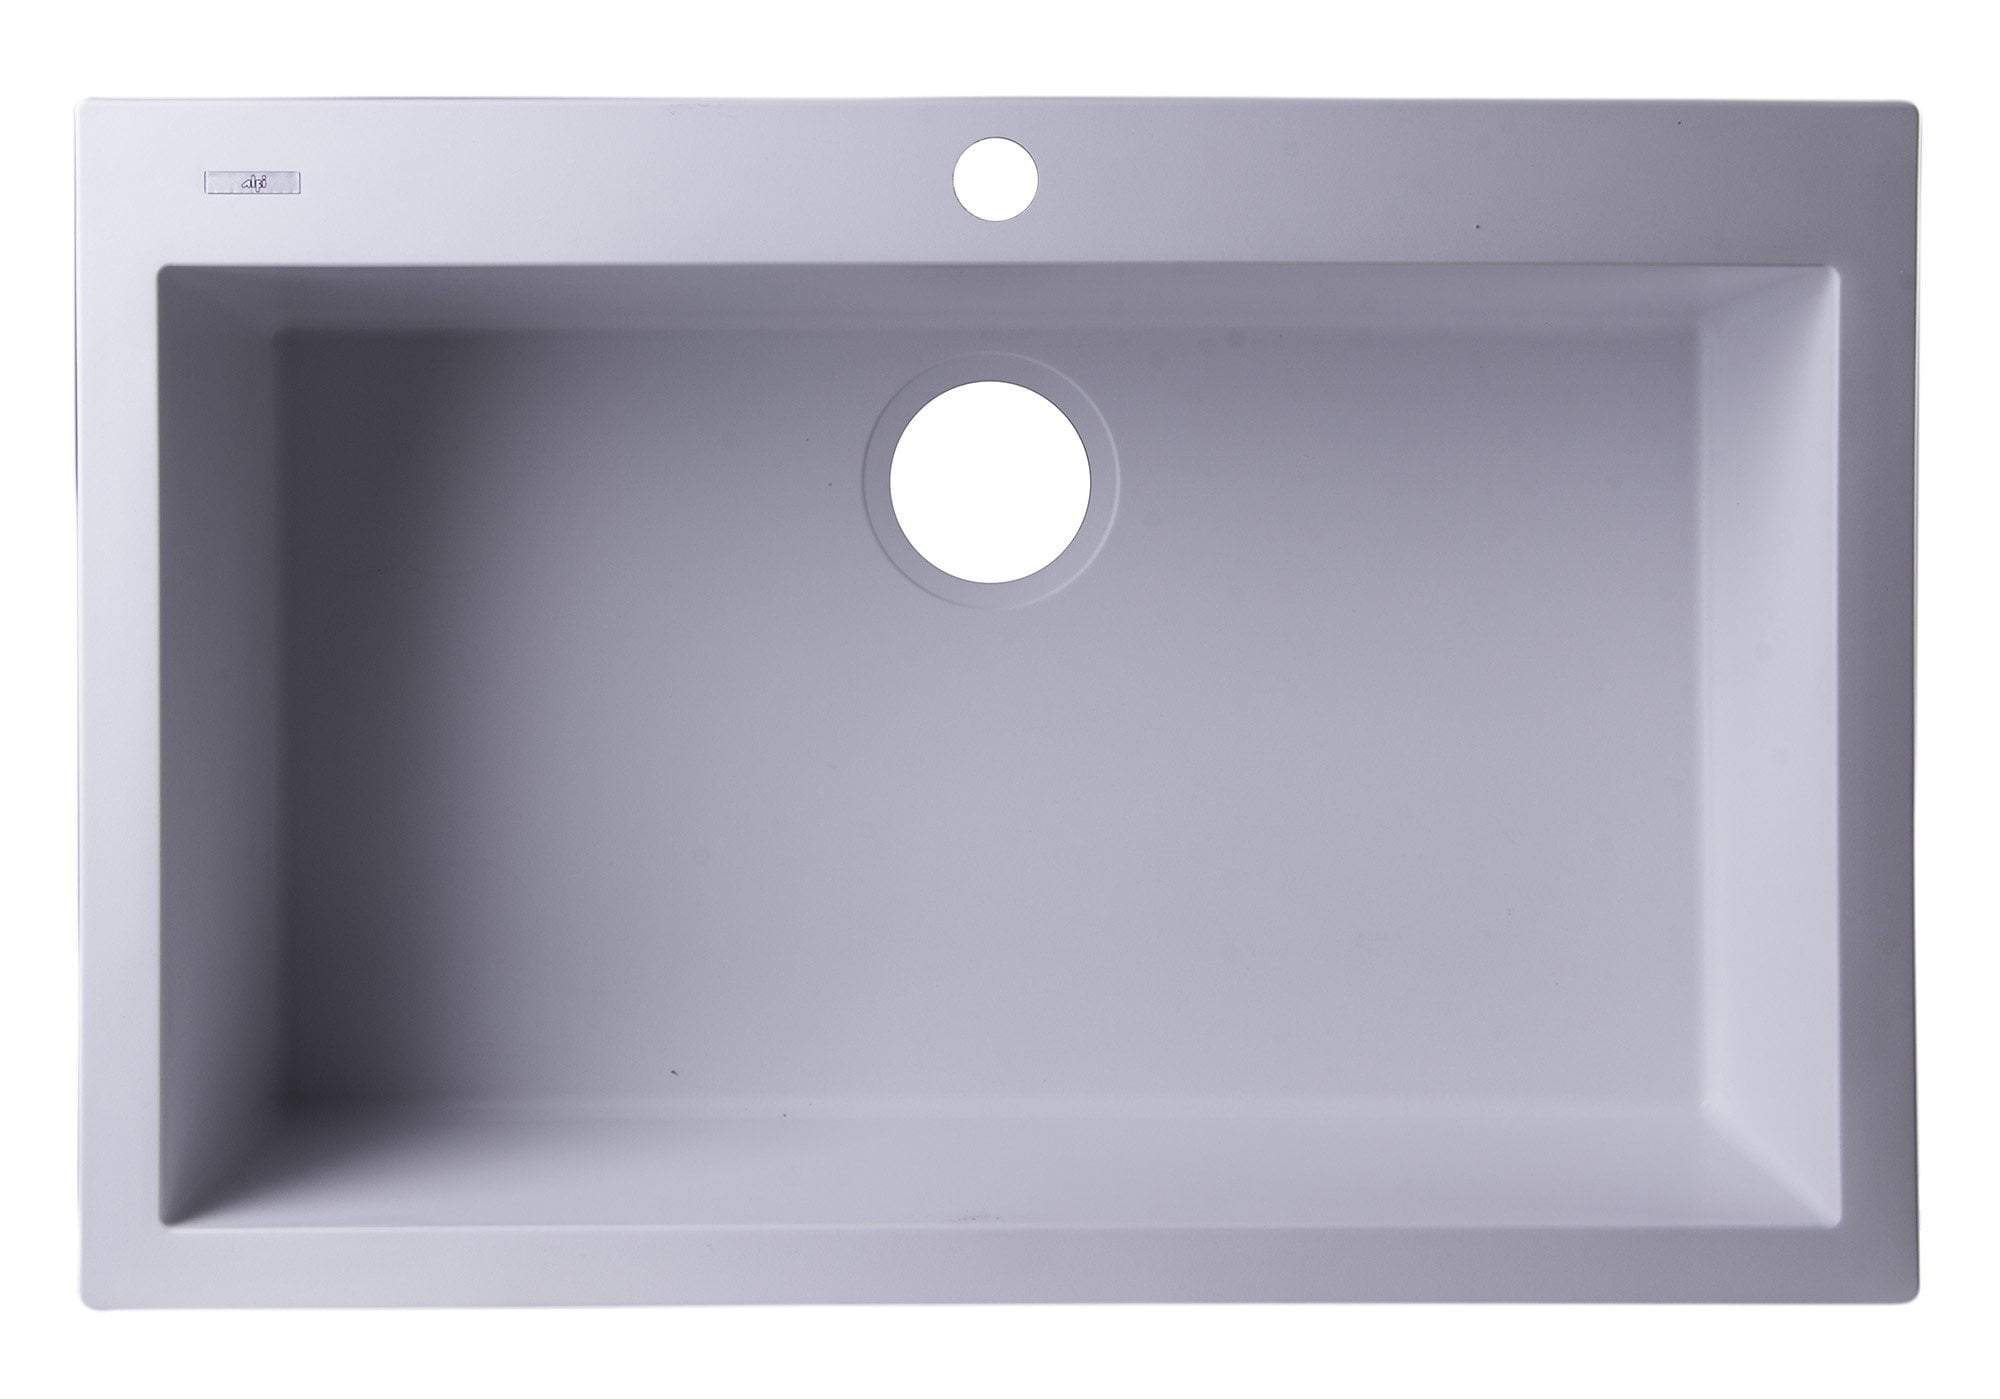 White 30" Drop-In Single Bowl Granite Composite Kitchen Sink